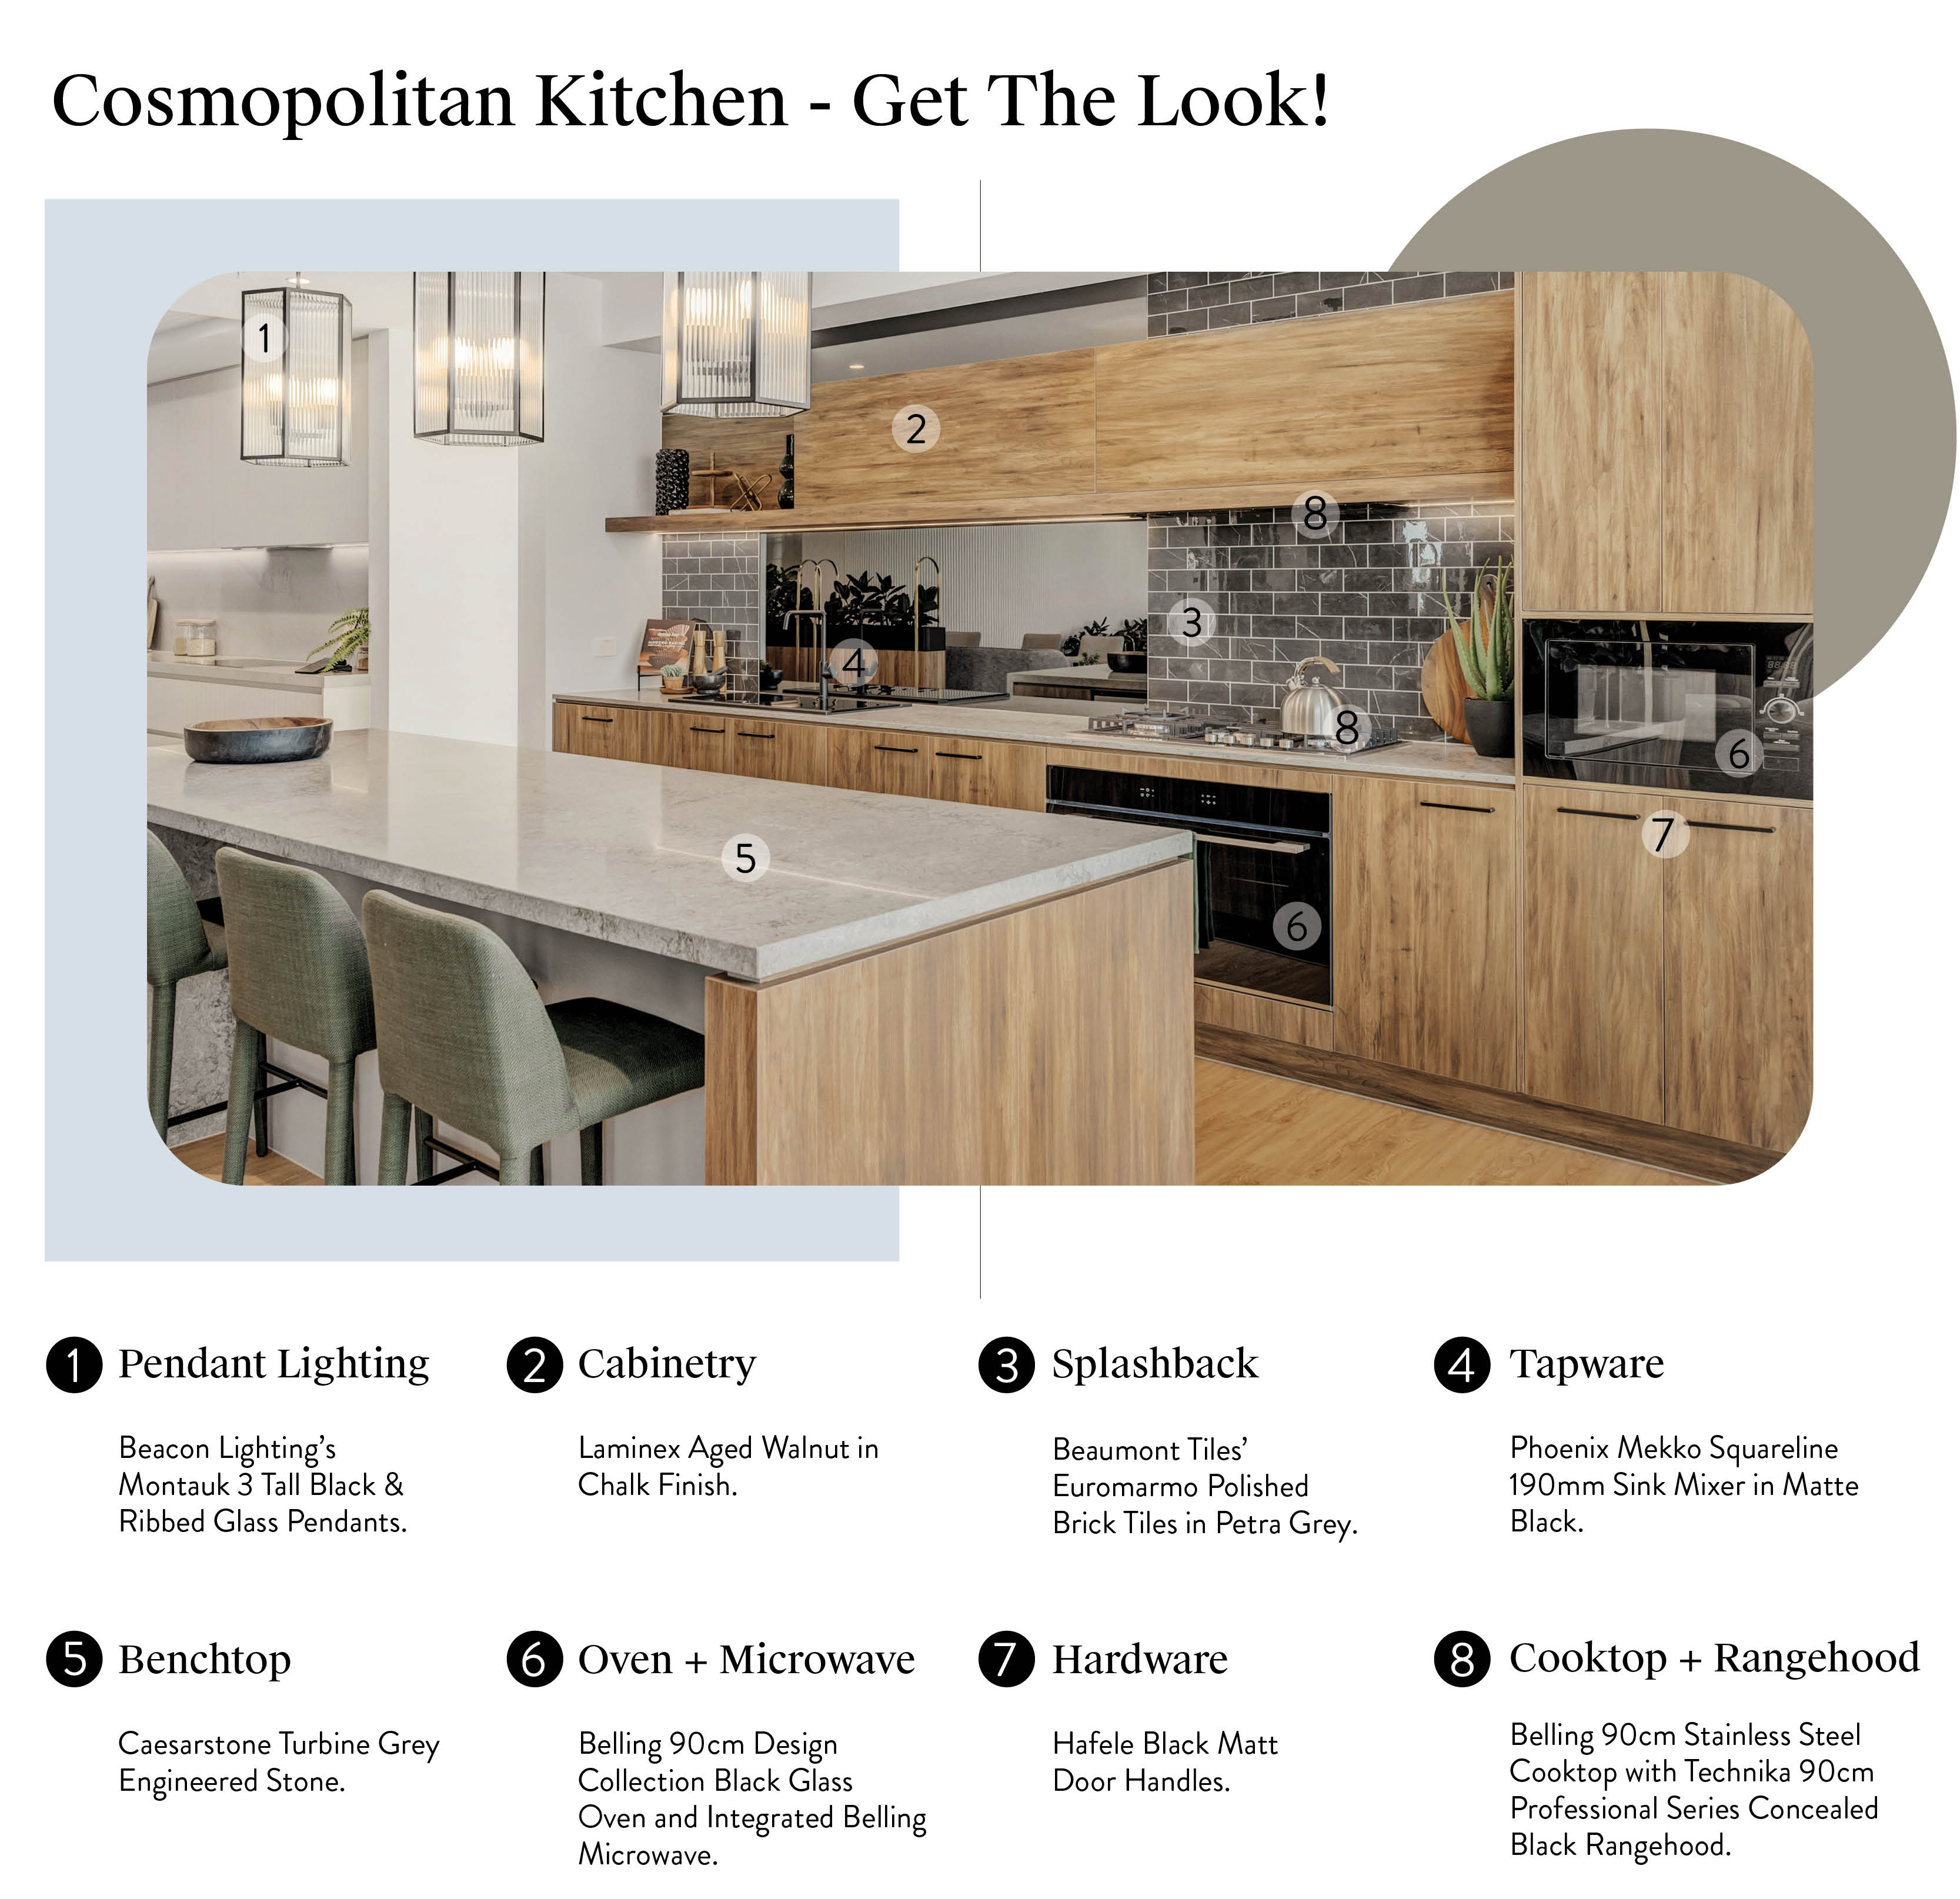 Get the Showroom Look: Cosmopolitan Kitchen